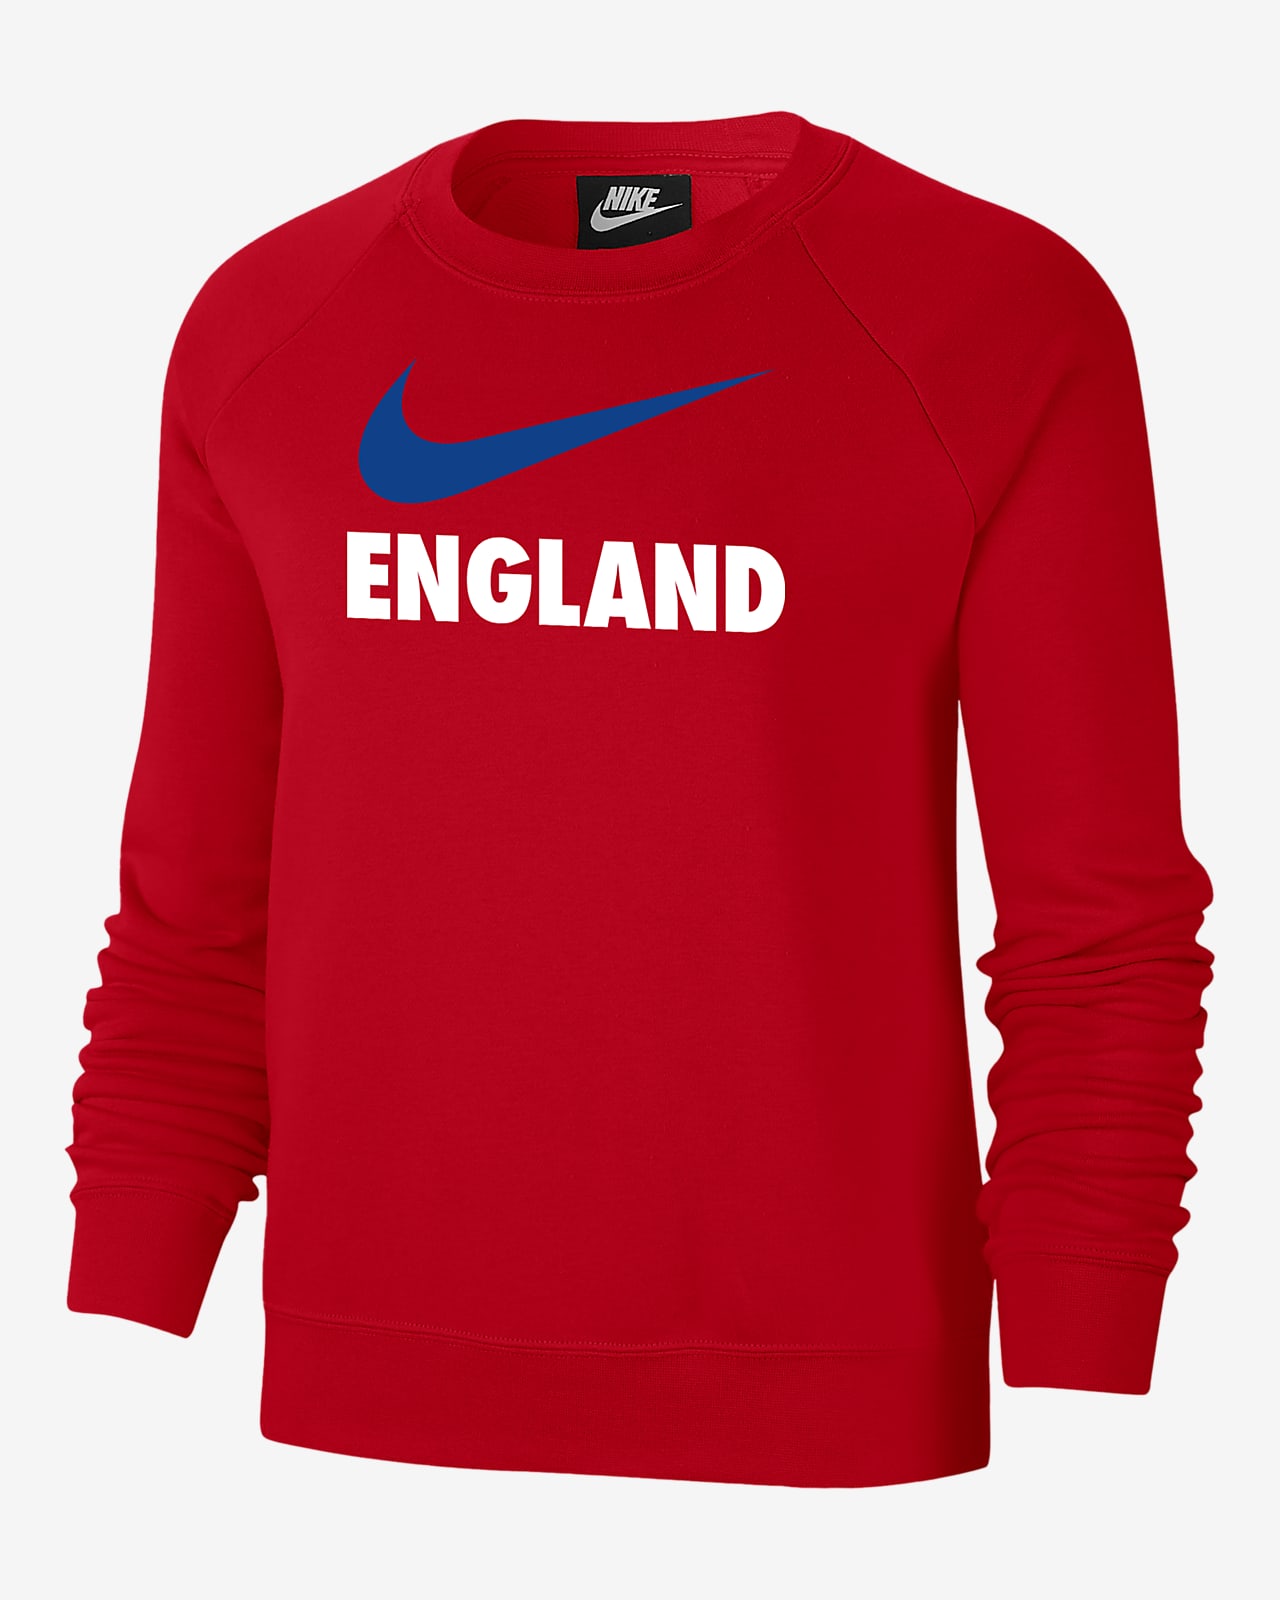 England Women's Fleece Varsity Crew-Neck Sweatshirt